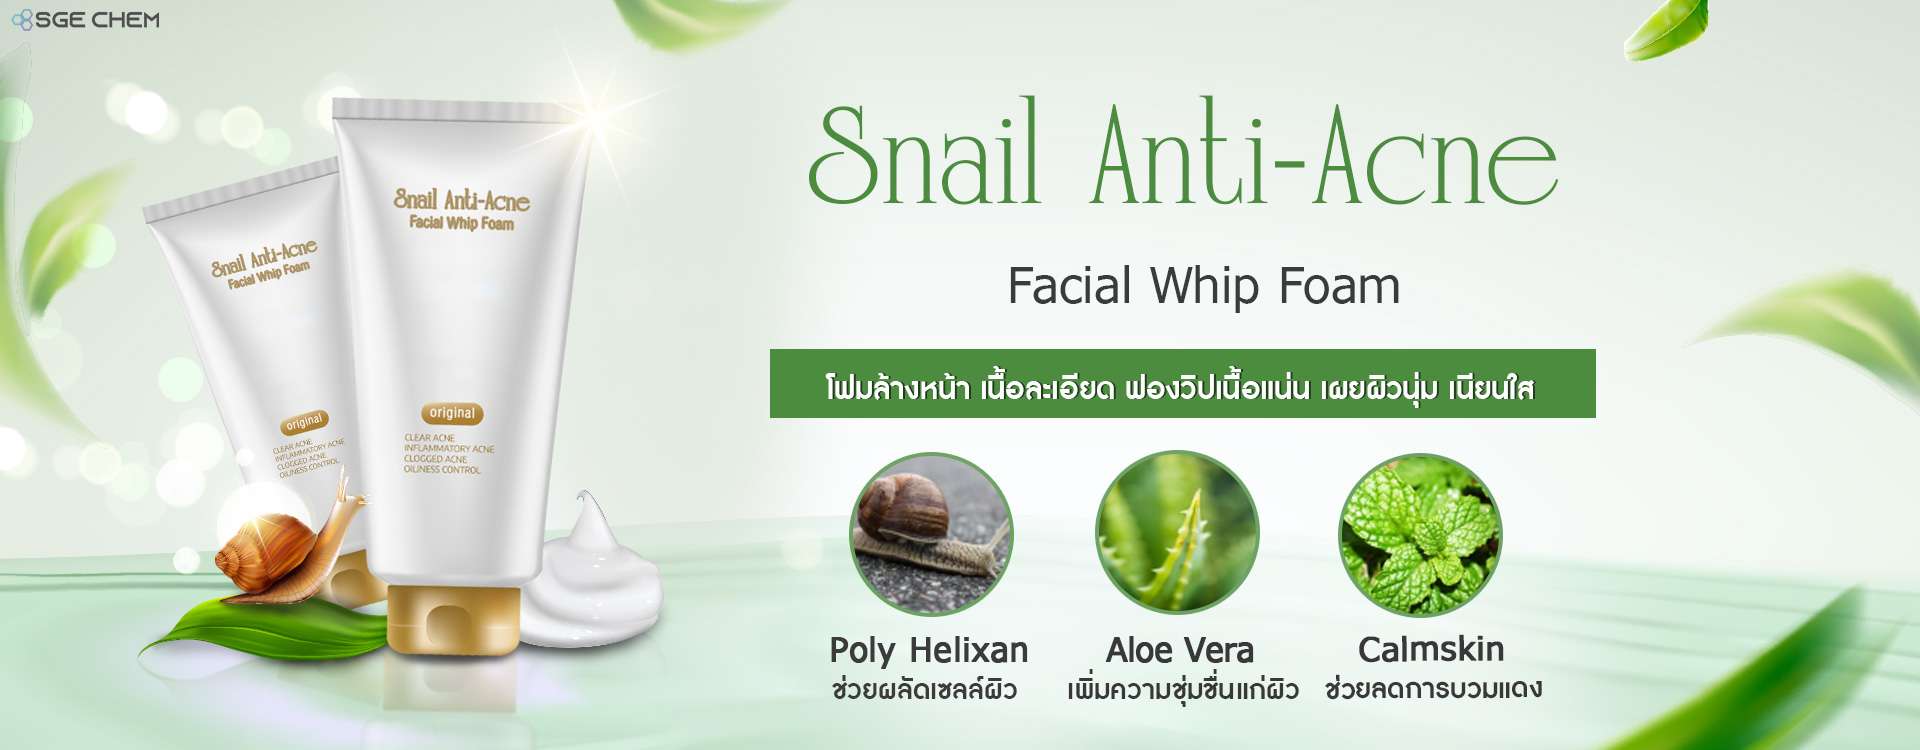 ผลิตภัณฑ์ดูแลผิวหน้าSnail-Anti-Acne-Facial-Whip-Foam2